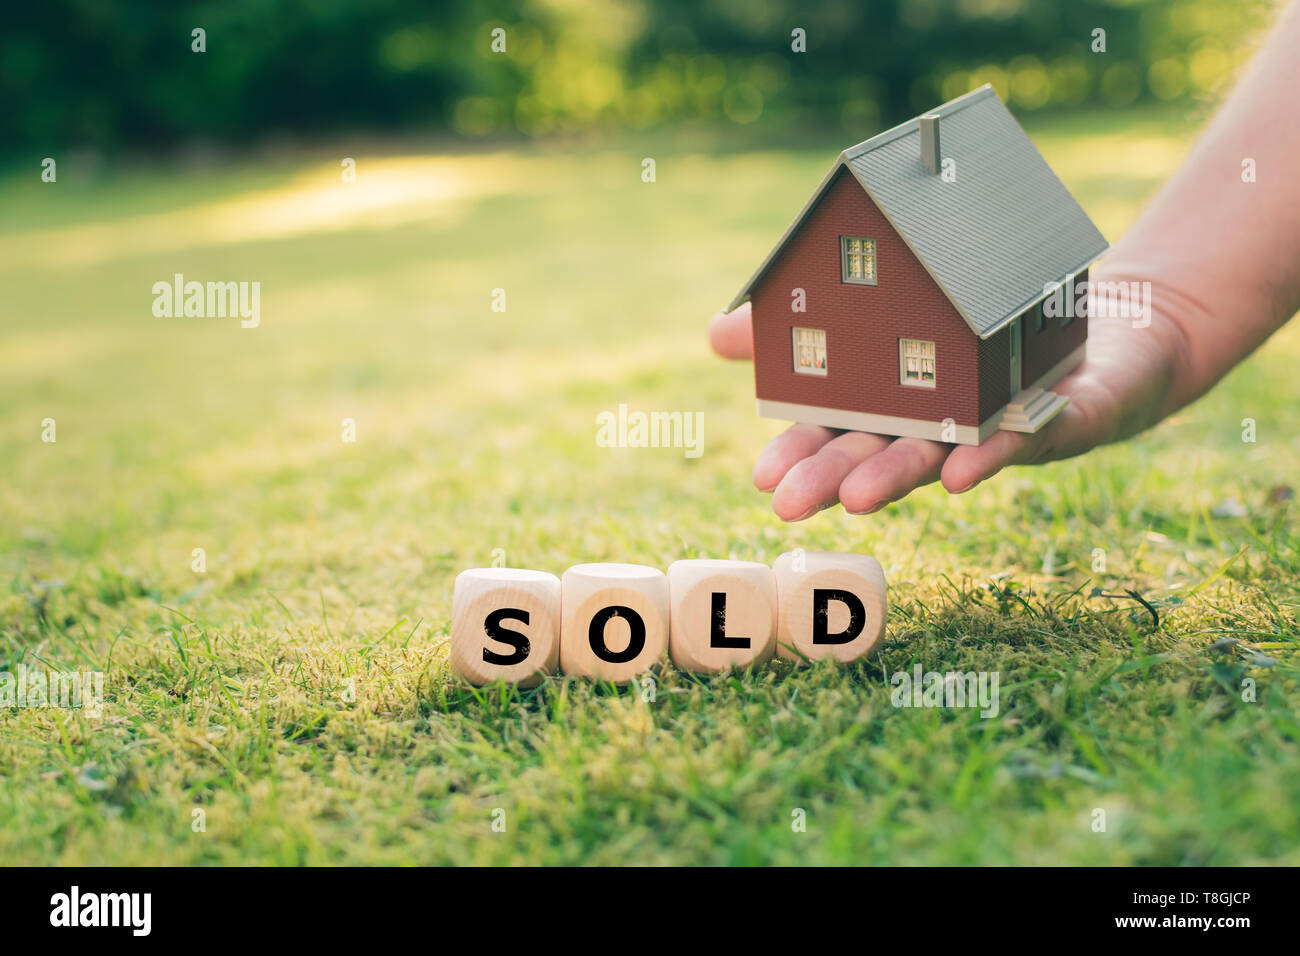 Konzept einer verkauft Haus. Eine Hand hält ein Modell über eine Wiese. Würfel Form alte das Wort'. Stockfoto